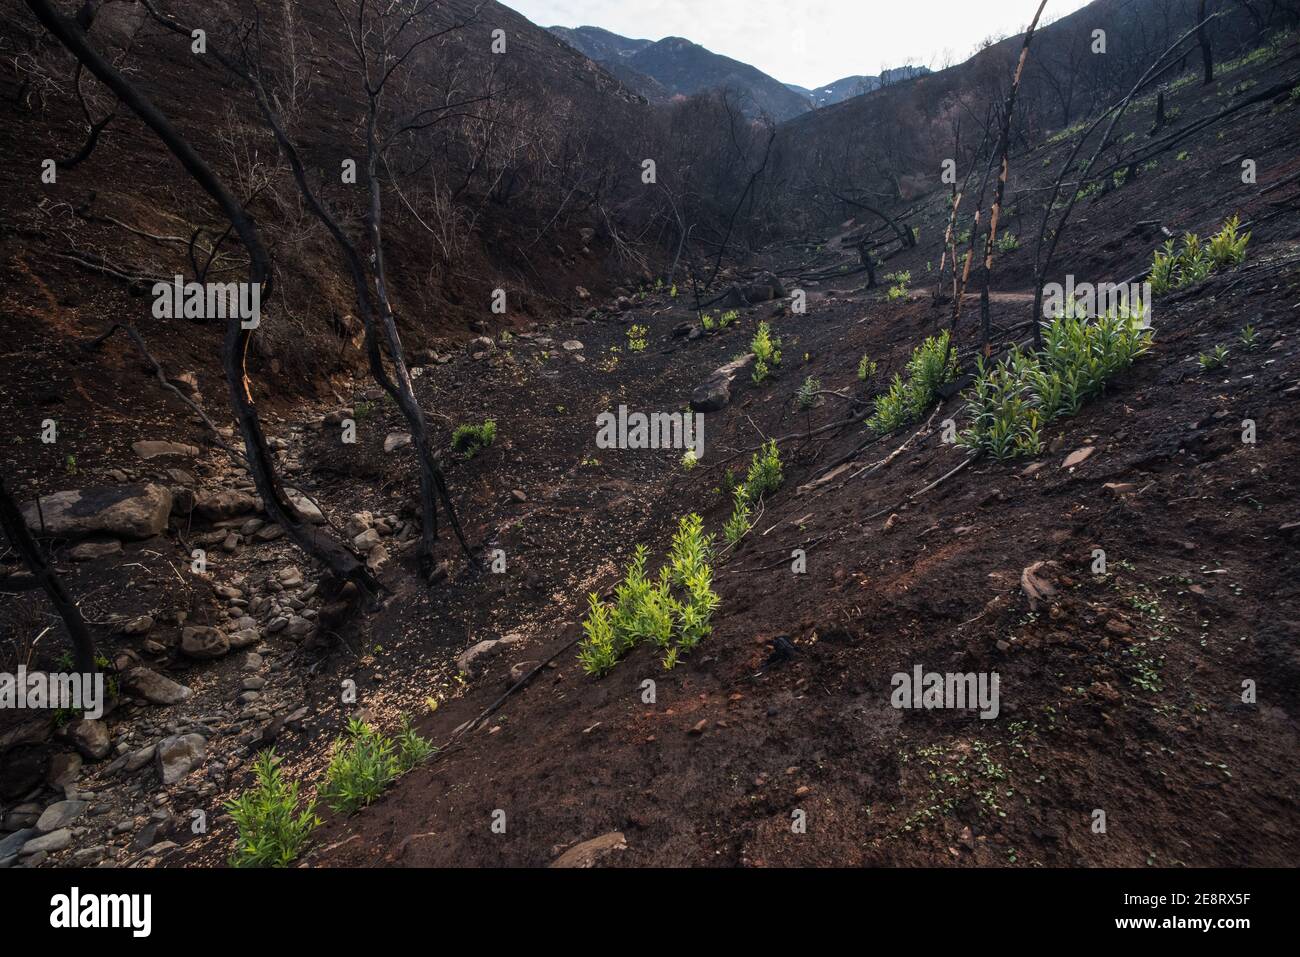 Kolonisierende Pflanzen beginnen in einem verbrannten Tal in der Grafschaft Solano aufzutauchen, wo Mitte 2020 Waldbrände über die Landschaft brannten. Stockfoto